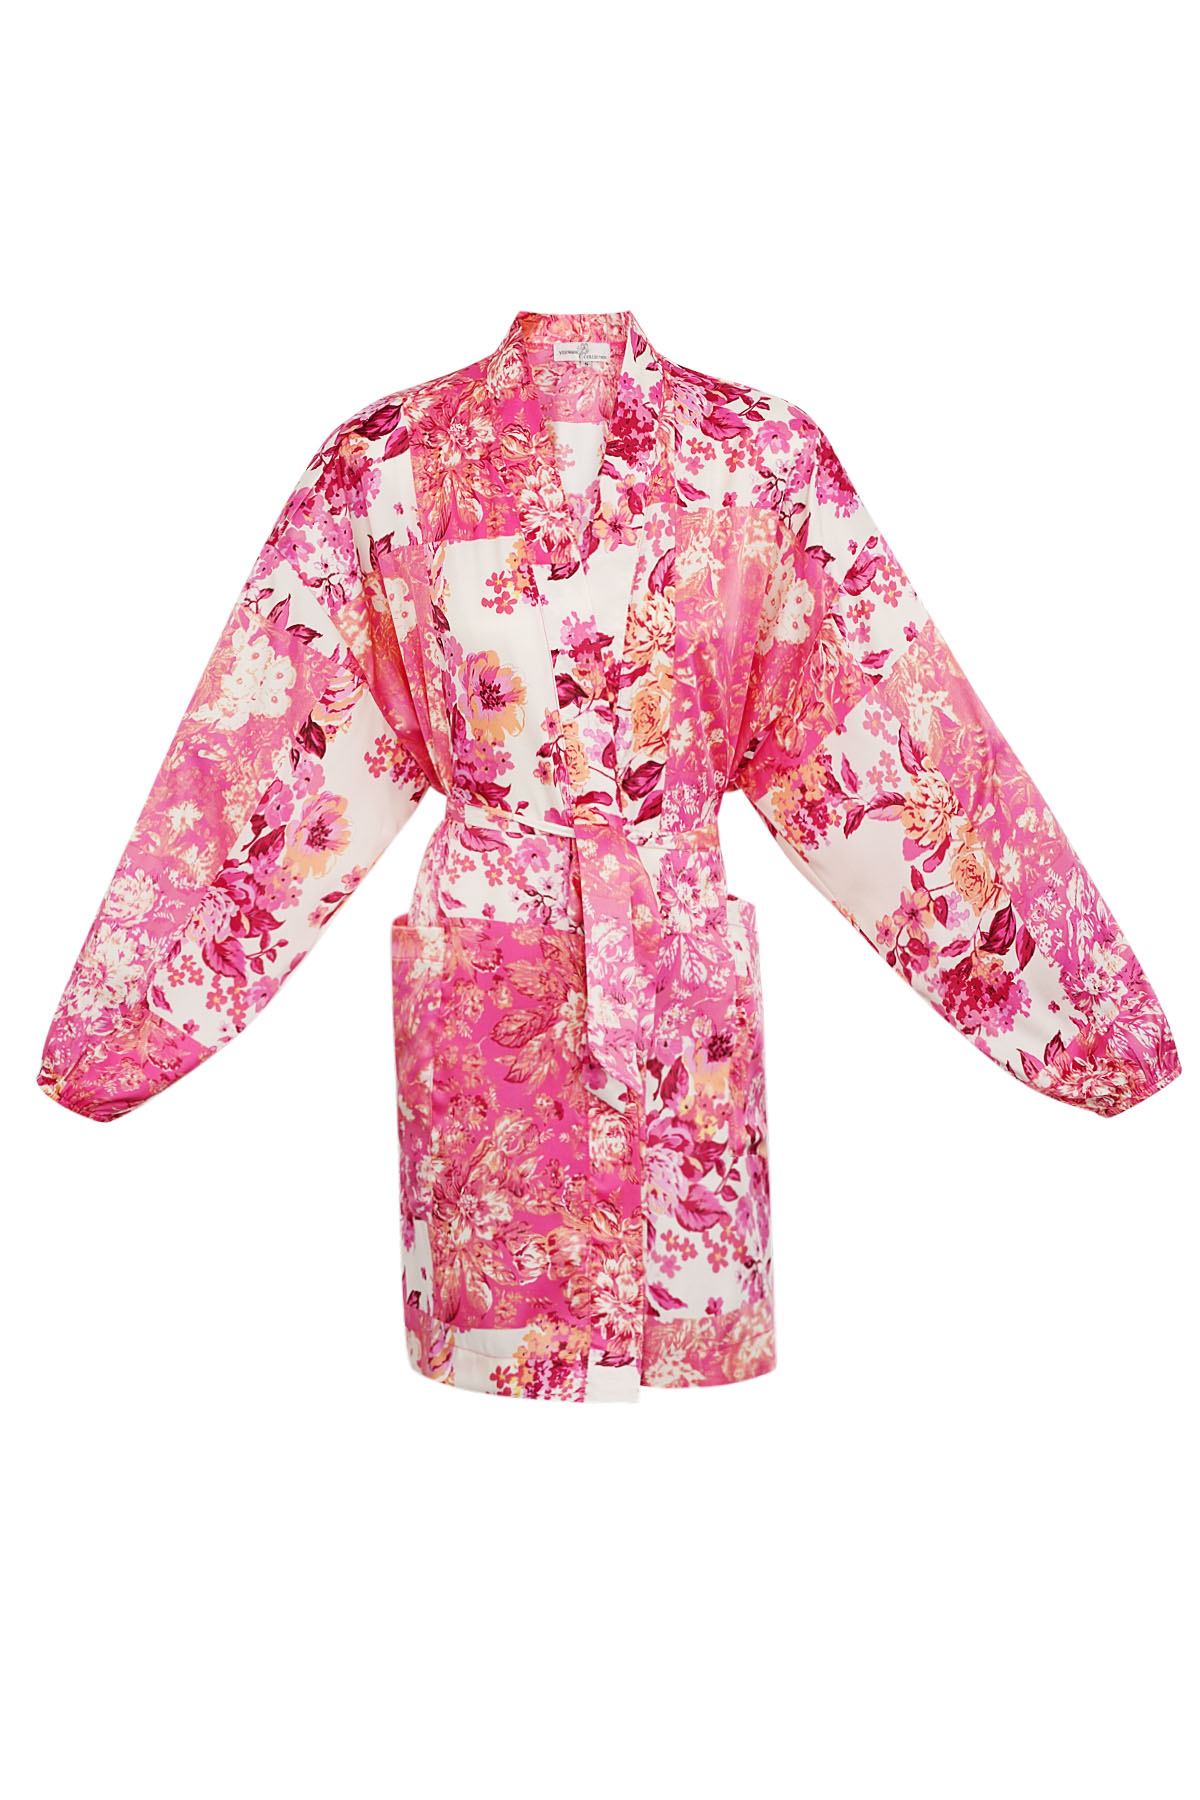 Korte kimono roze bloemen - multi